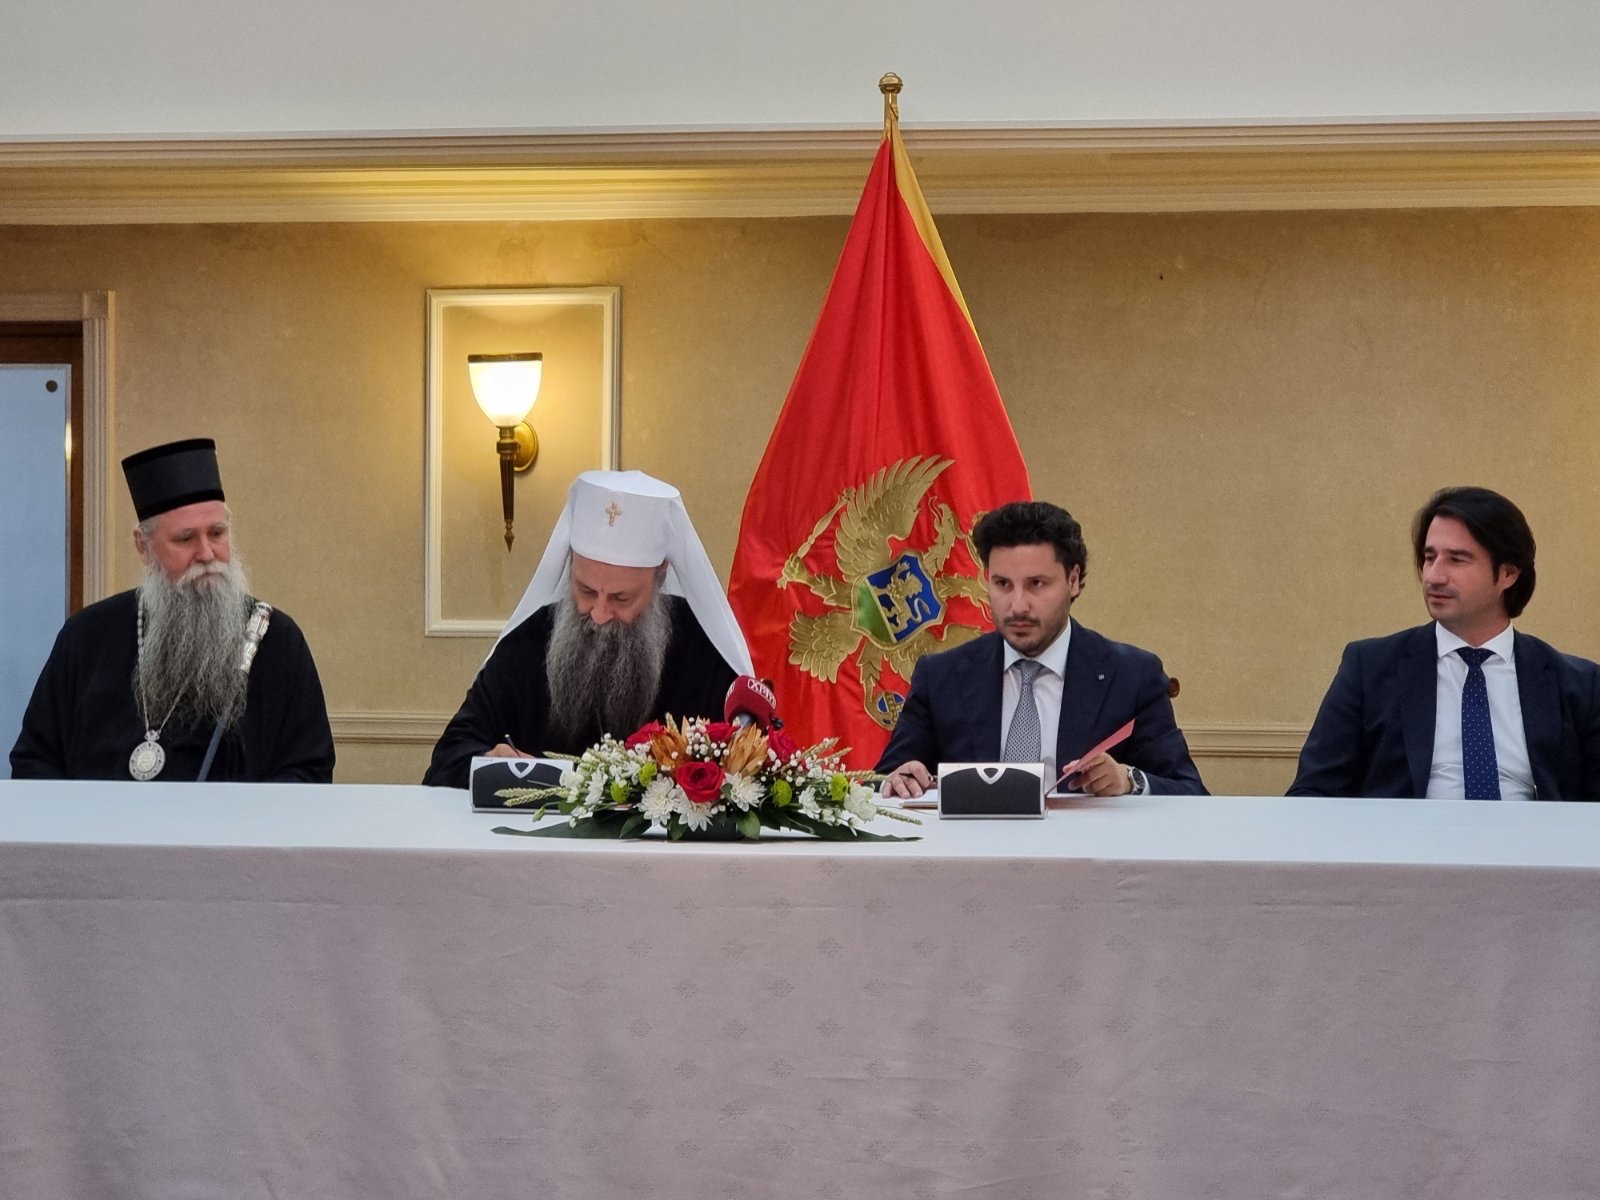 Συμφωνία μεταξύ σερβικής Εκκλησίας και Μαυροβουνίου - Έπεσαν οι υπογραφές!